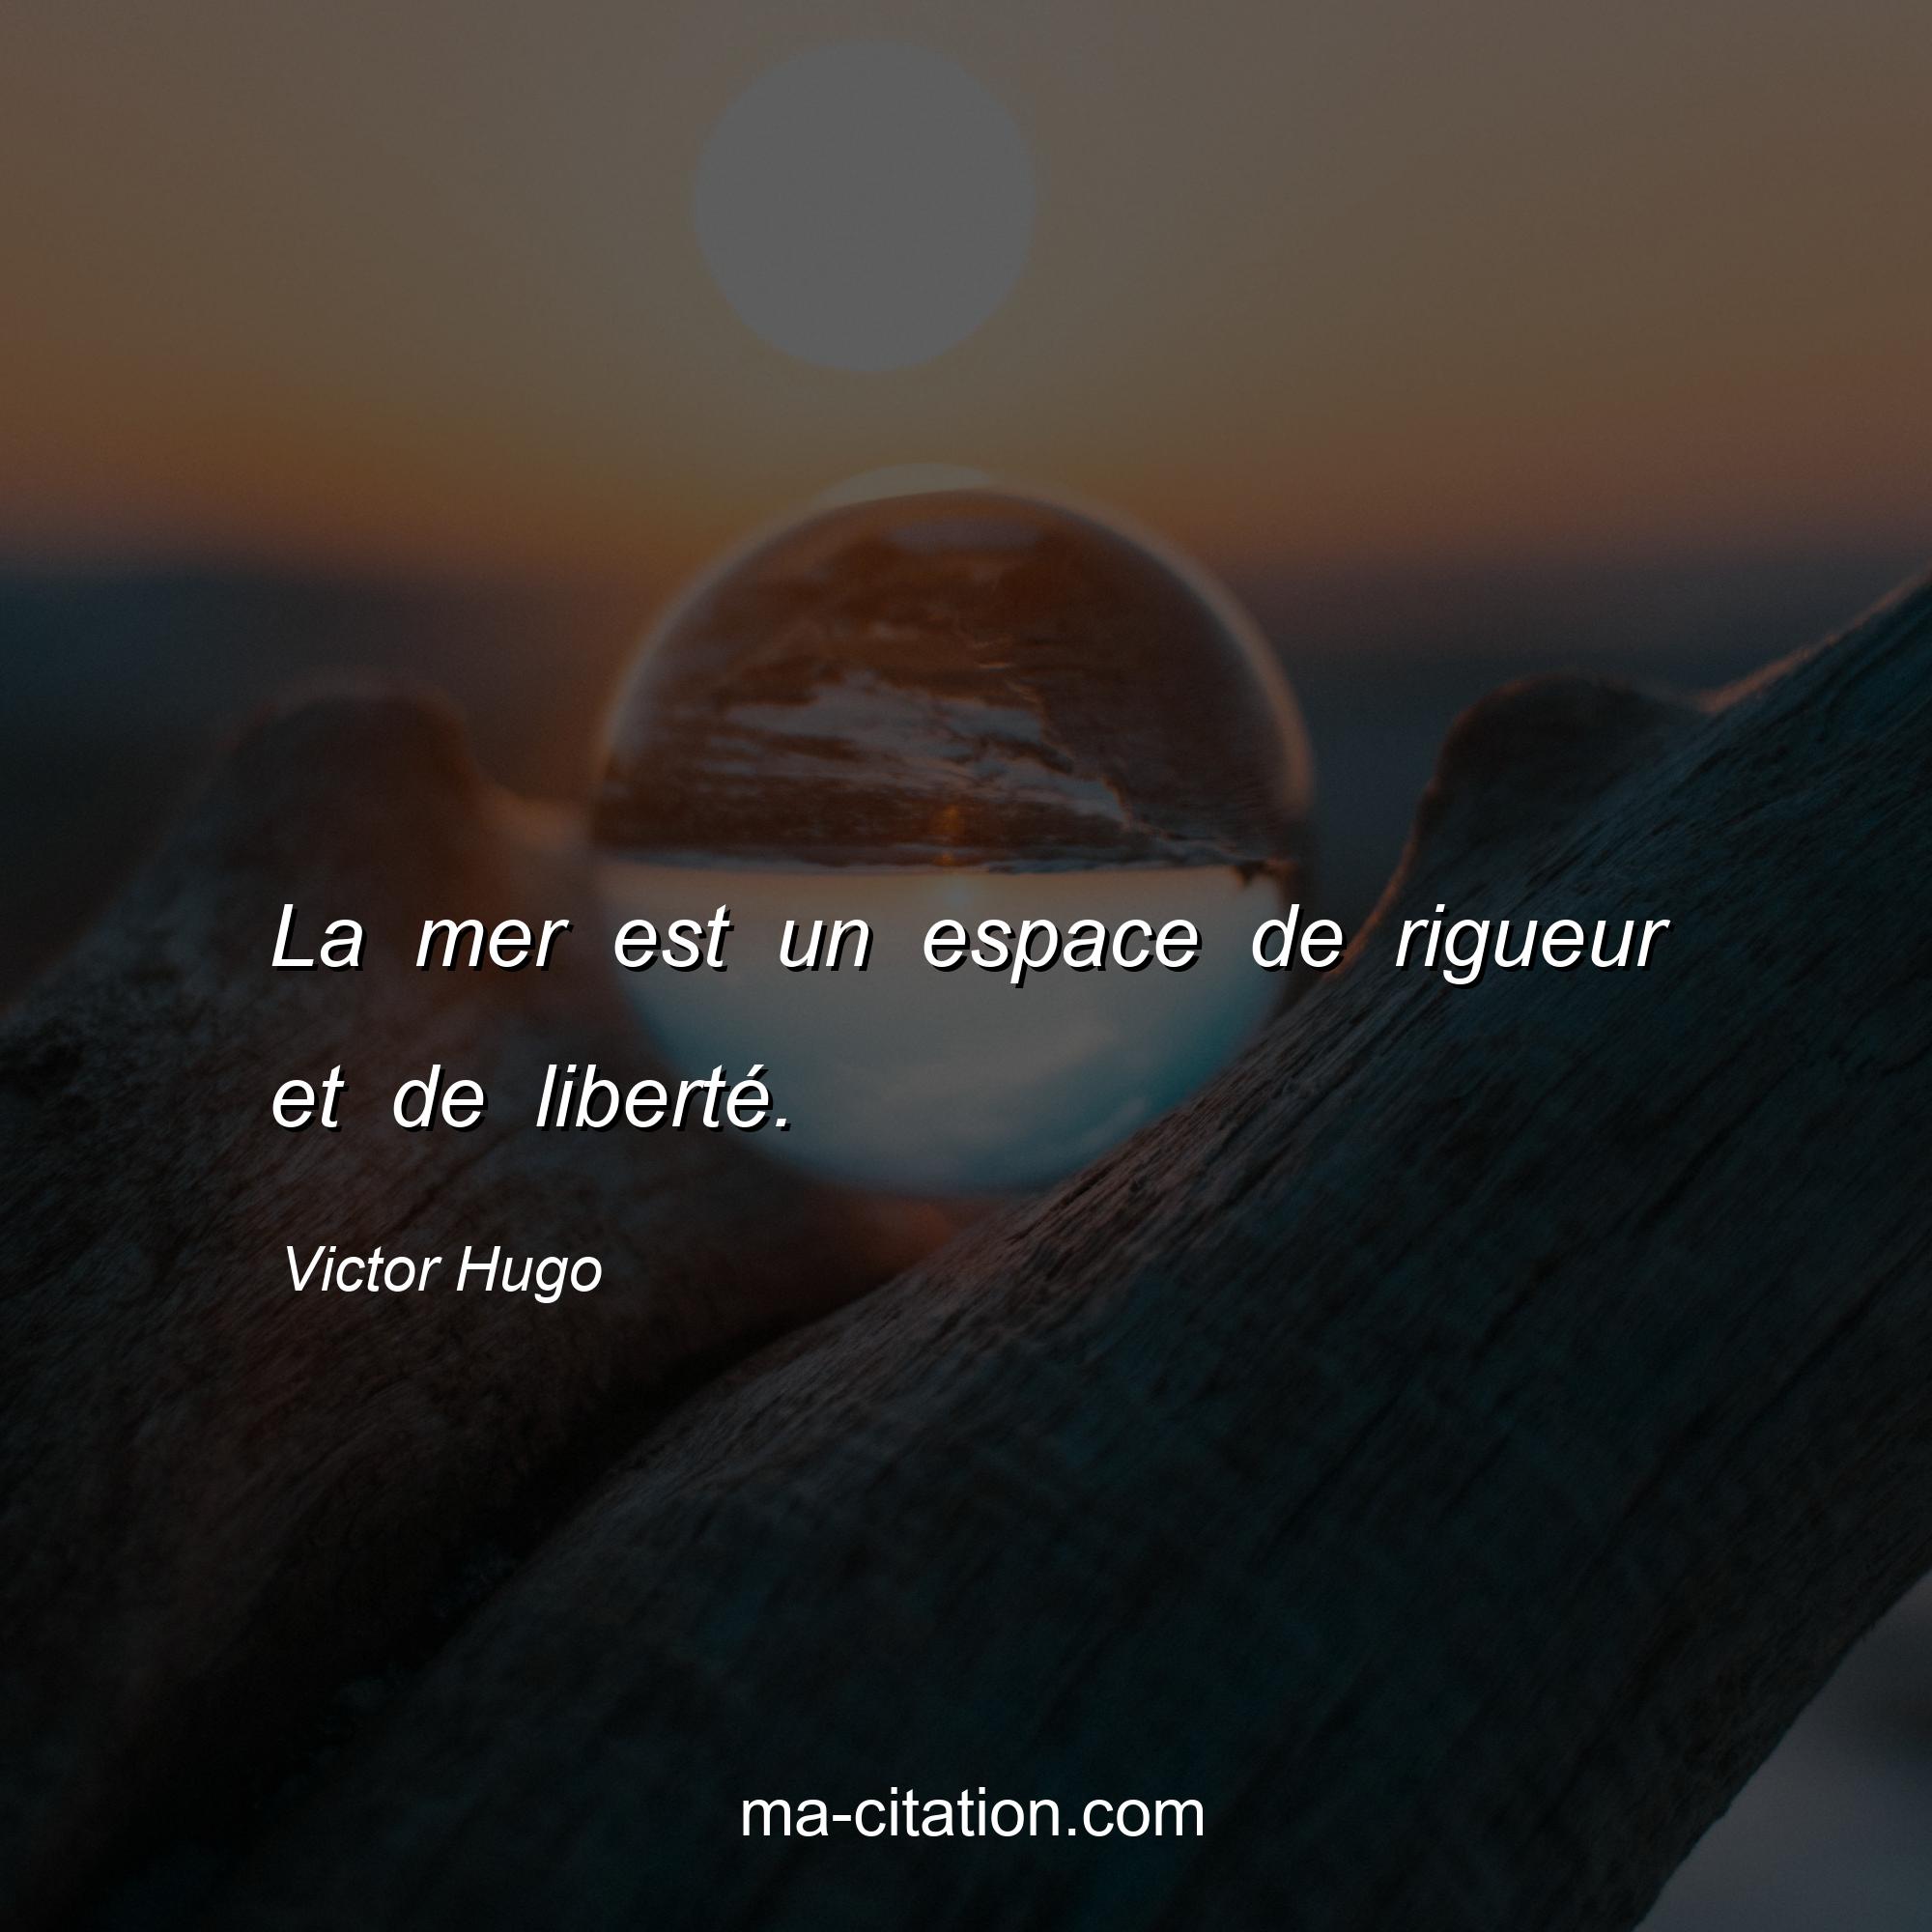 Victor Hugo : La mer est un espace de rigueur et de liberté.